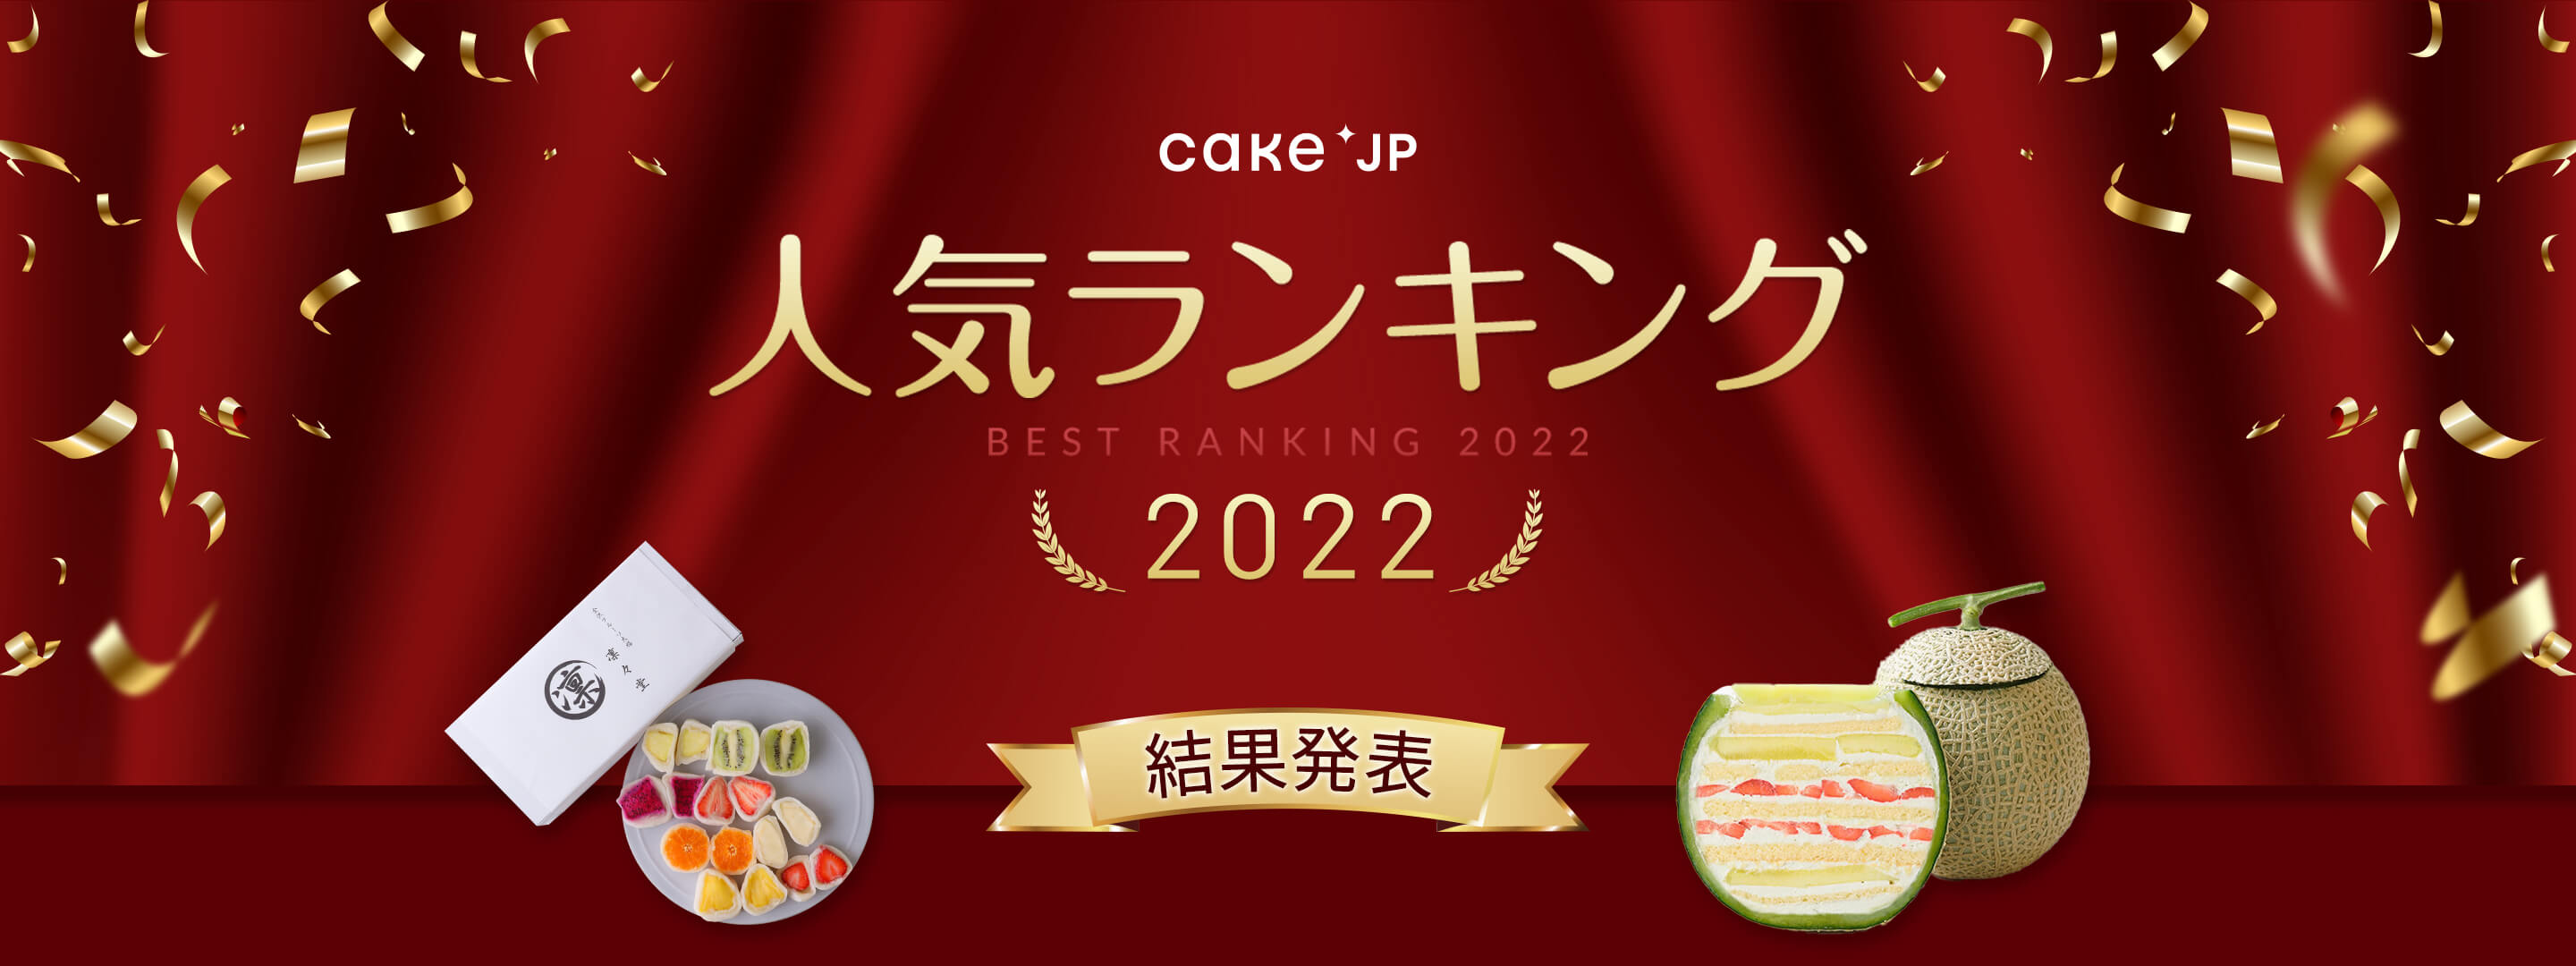 Cake.jp 人気ランキング2022 結果発表